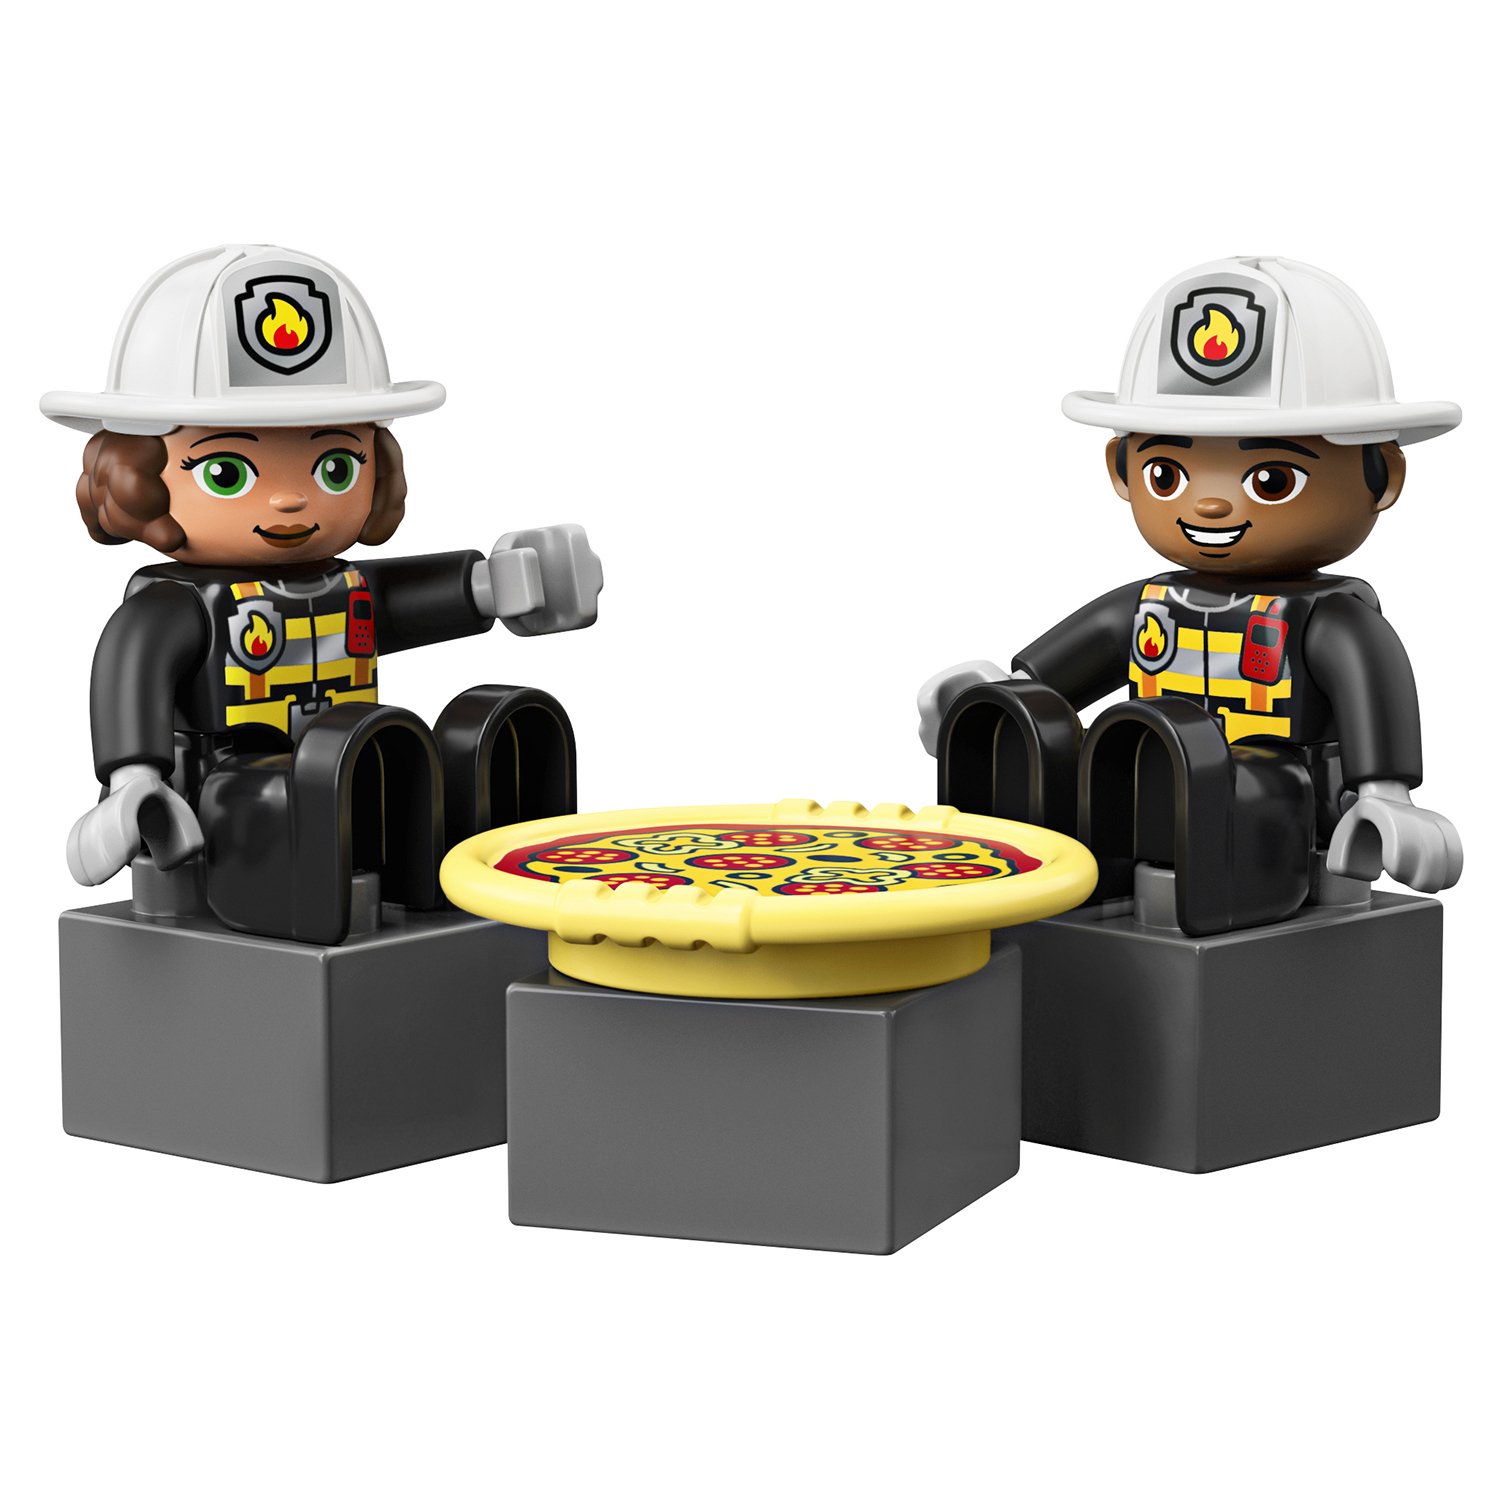 Конструктор LEGO Duplo «Пожарное депо» 10903